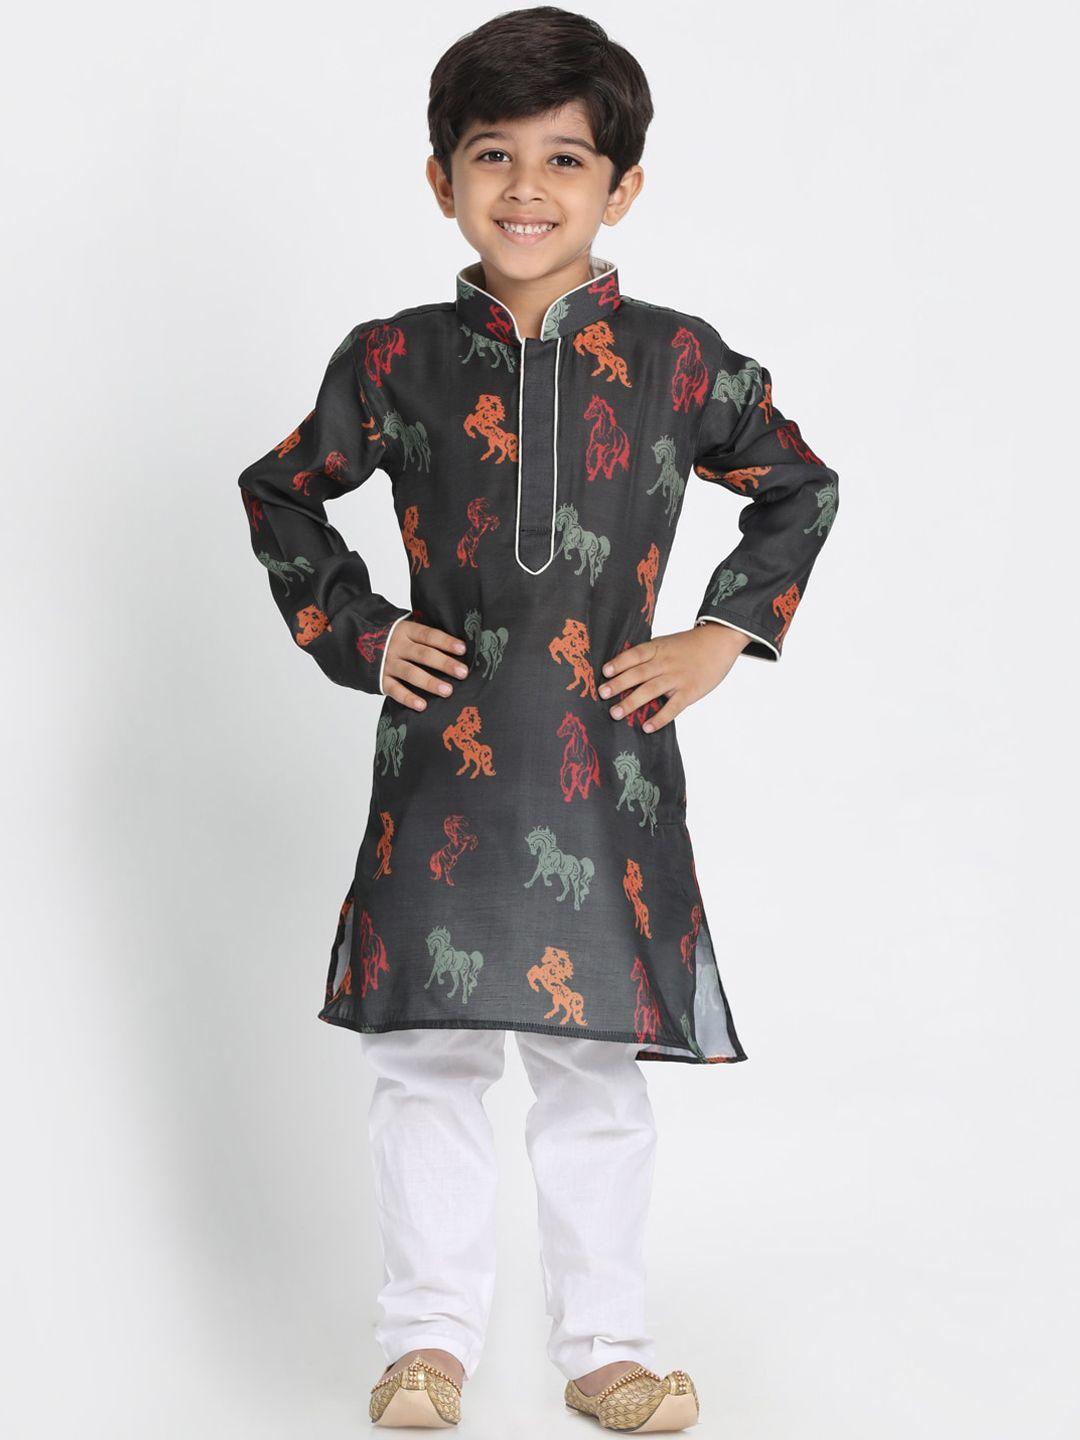 jbn-creation-boys-black-floral-printed-kurta-with-pyjamas